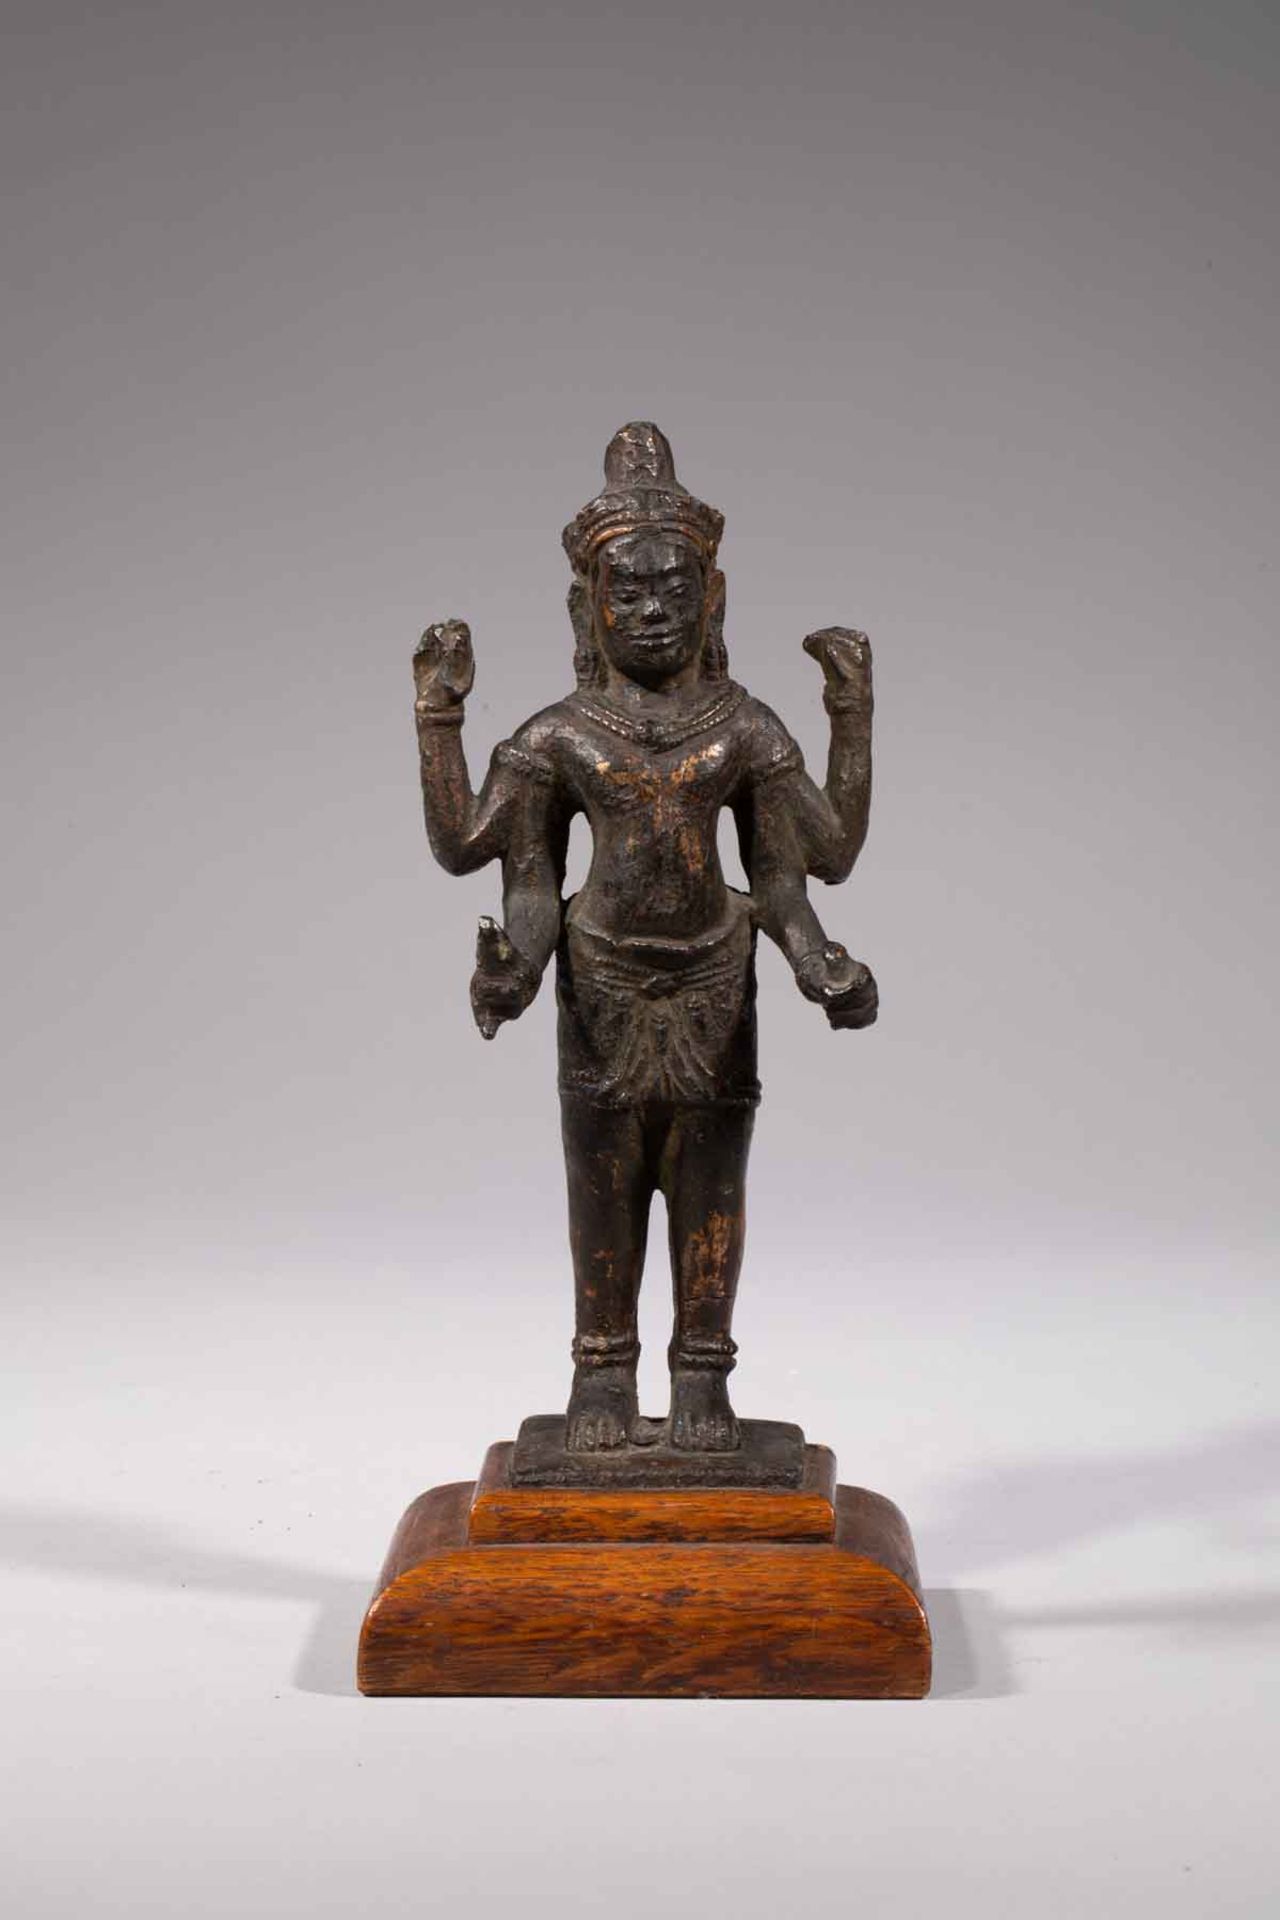 Vishnu debout dans une posture hiératique , sous une forme à 4 bras , coiffé d’une tiare , paré de